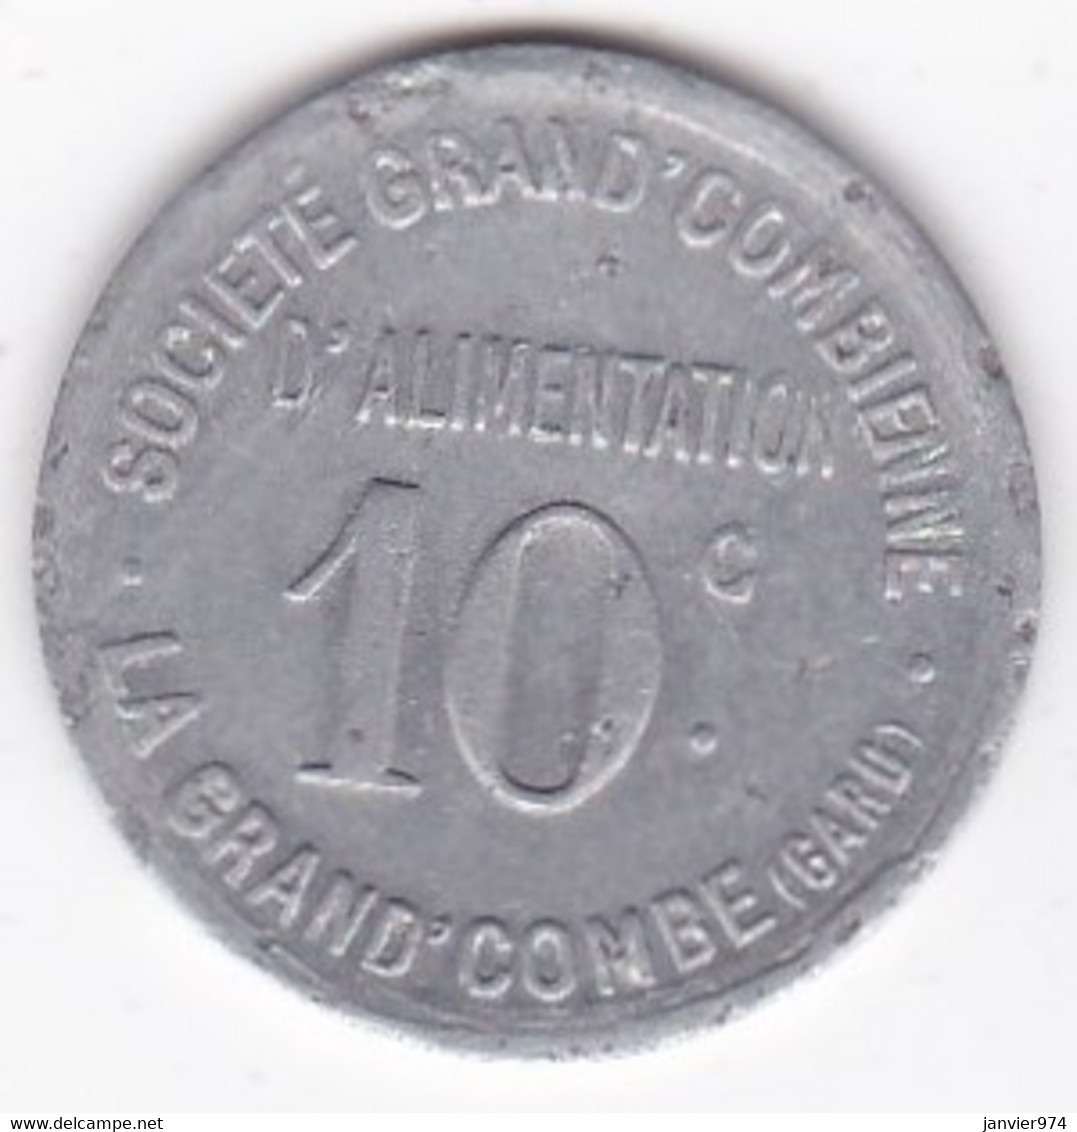 30. Gard. La Grand Combe. Société Grand' Combienne D'alimentation 10 Centimes, En Aluminium Rond - Noodgeld